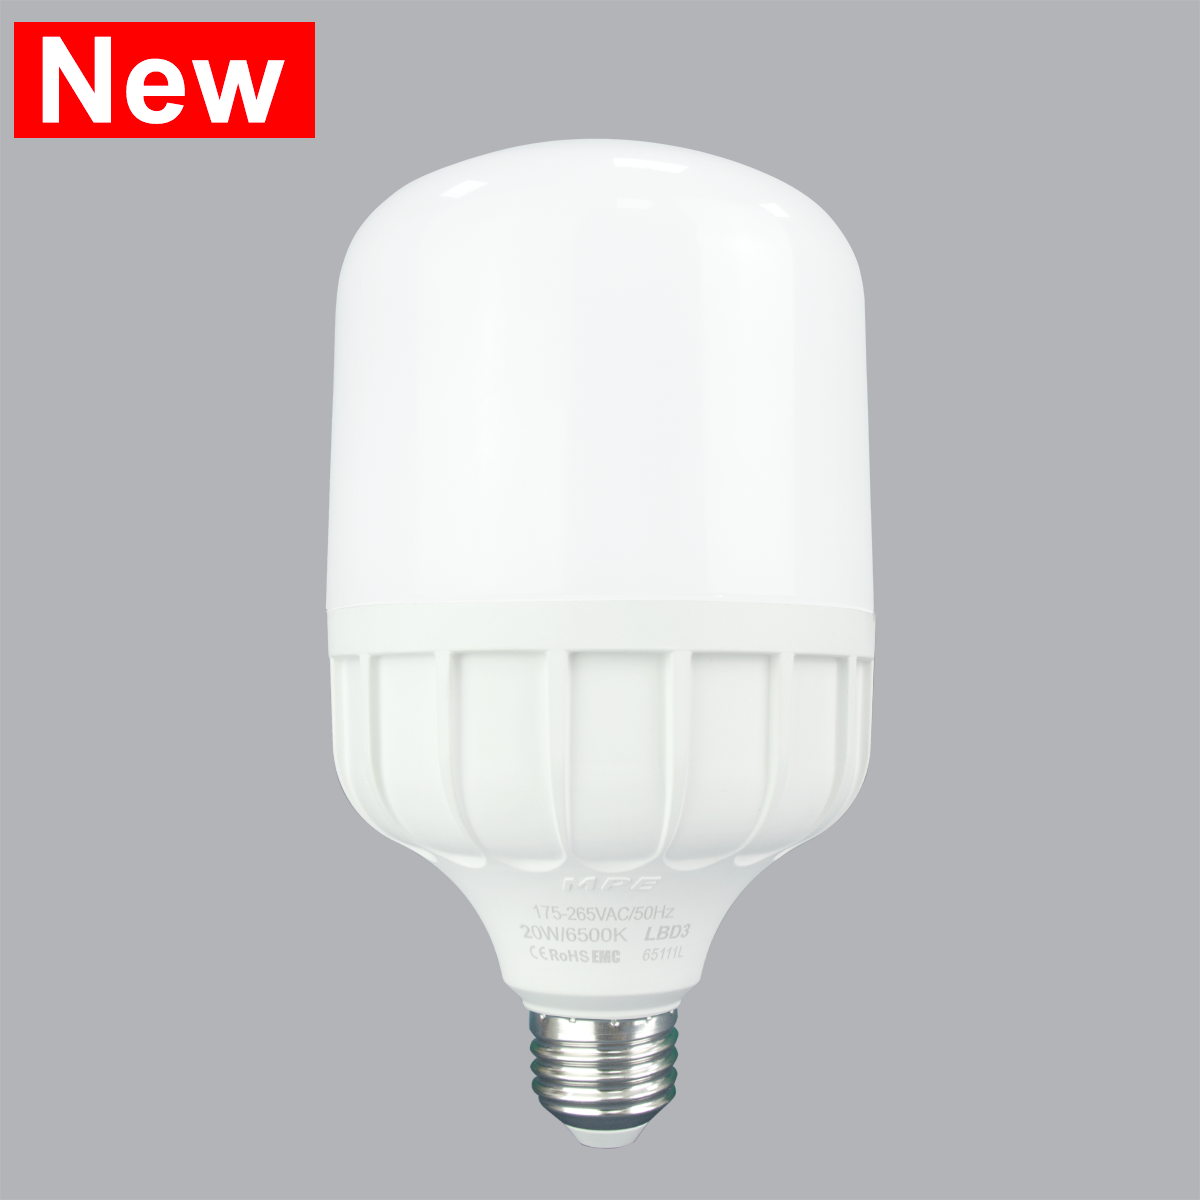 Đèn led Bulb chống ẩm 40W MPE, 118X216 mm - LBD3-40V ánh sáng vàng